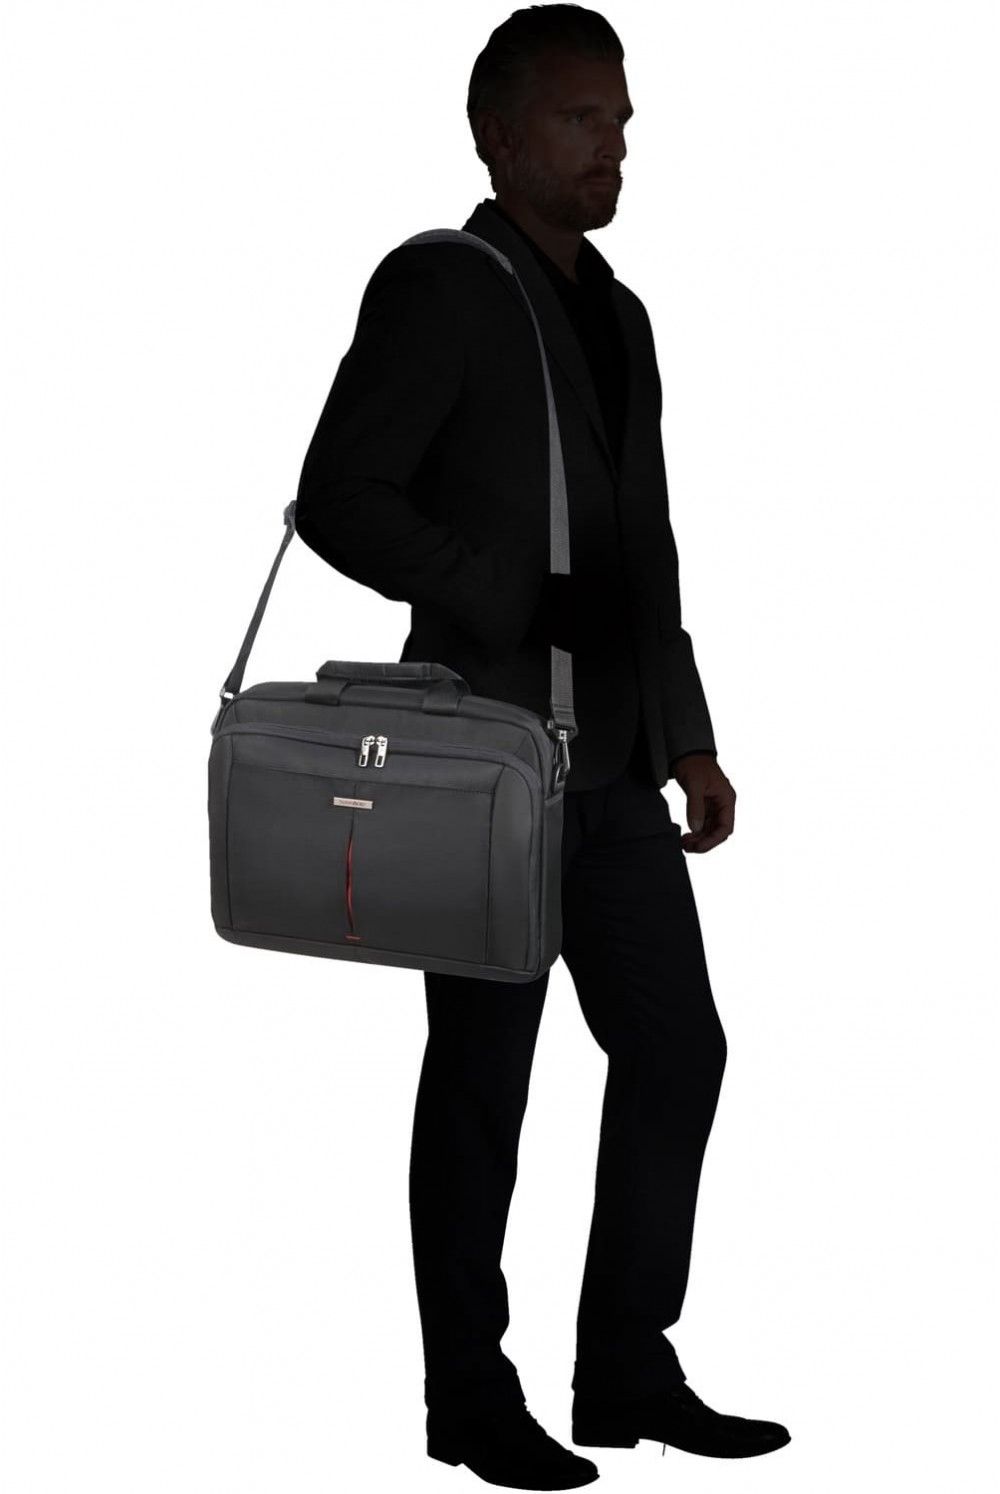 Samsonite Guardit 2.0 briefcase 15.6 inches